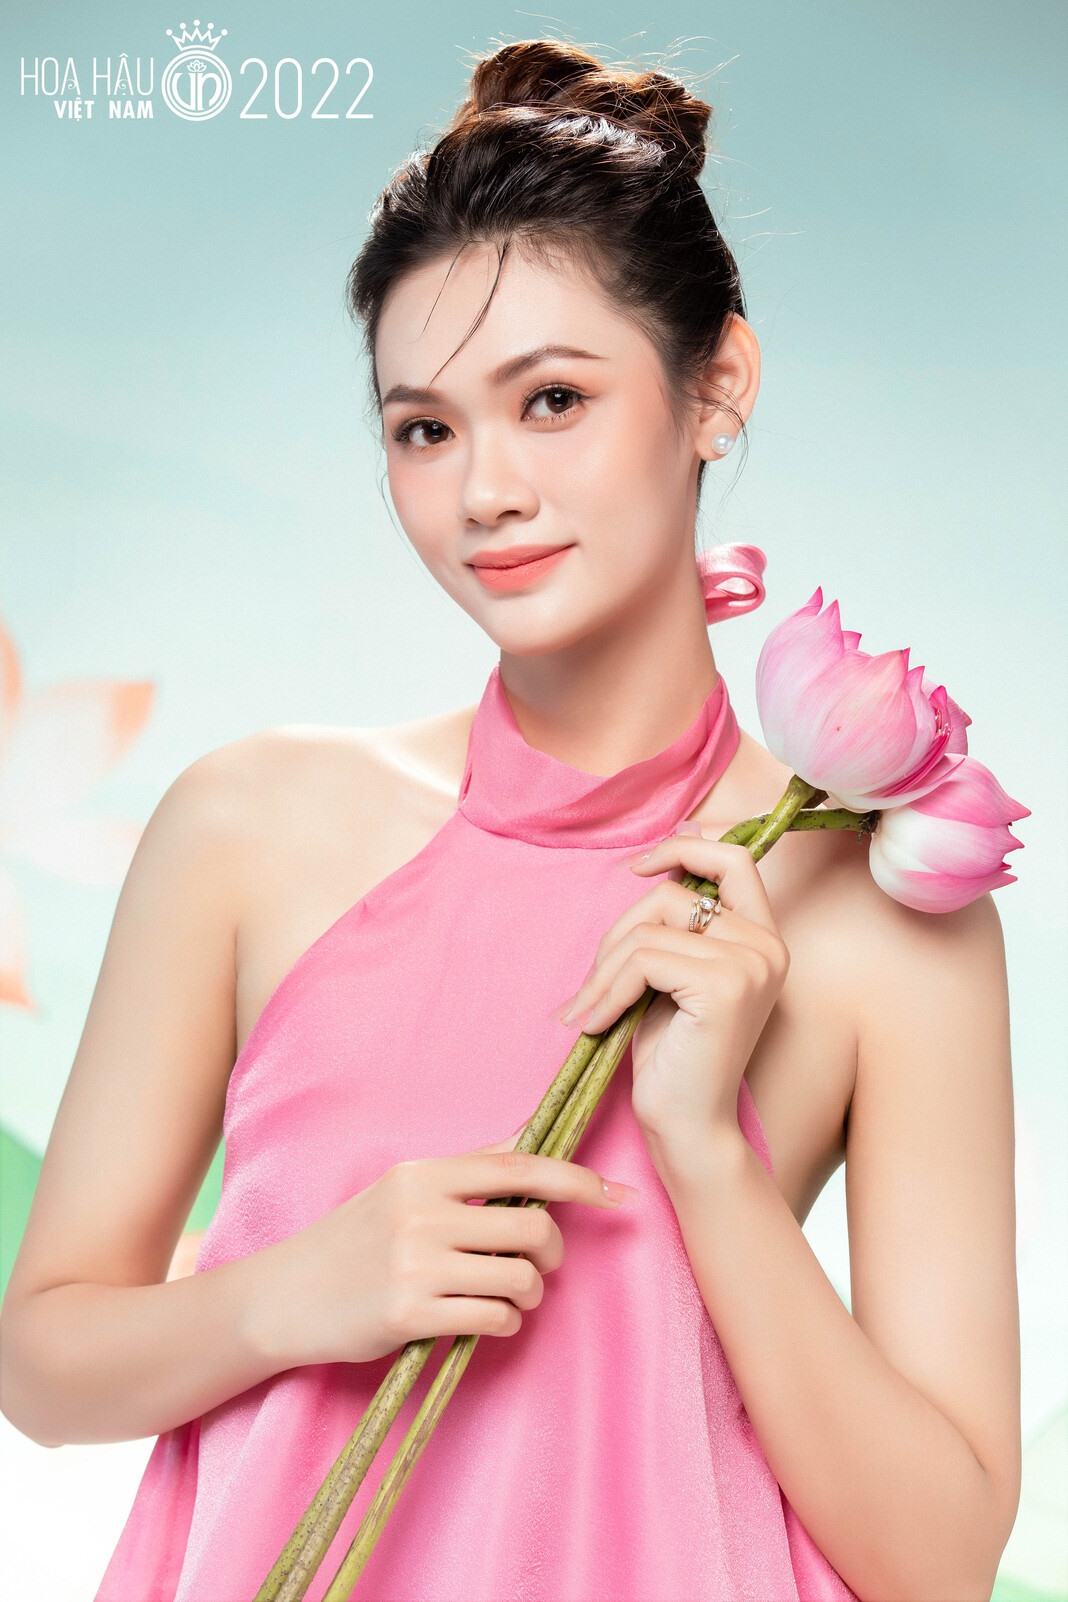 5 thí sinh có chiều cao khủng nhất tại Hoa hậu Việt Nam 2022